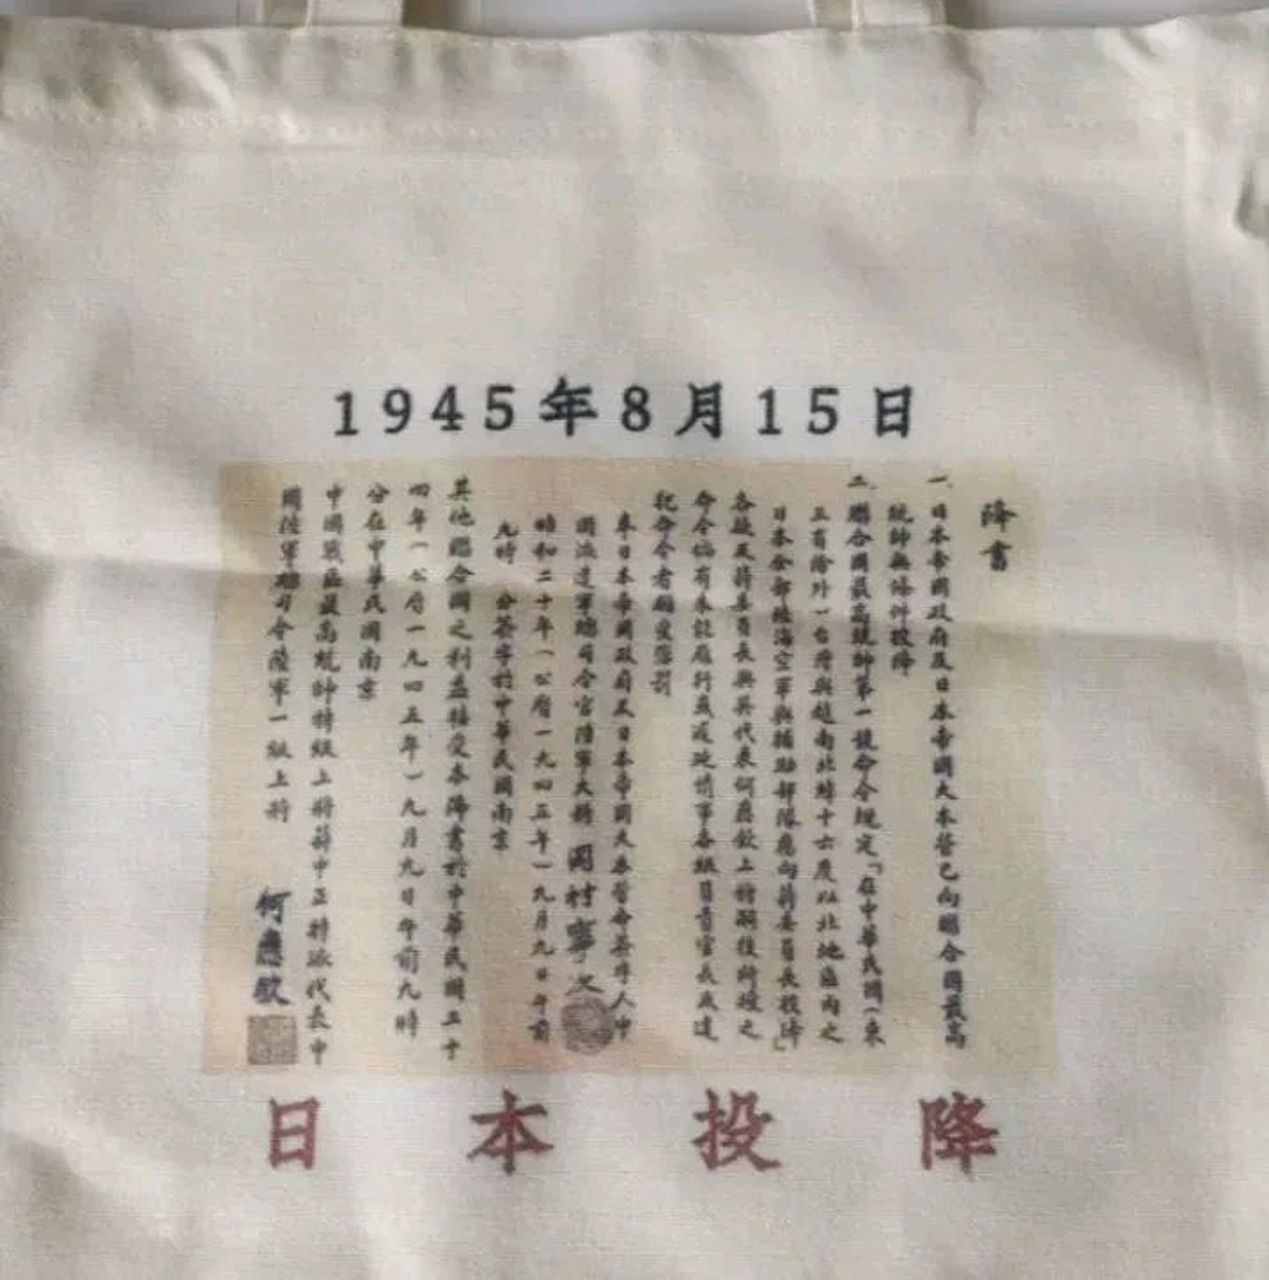 这几天,北京一个女孩把日本投降书图标印在帆布包上